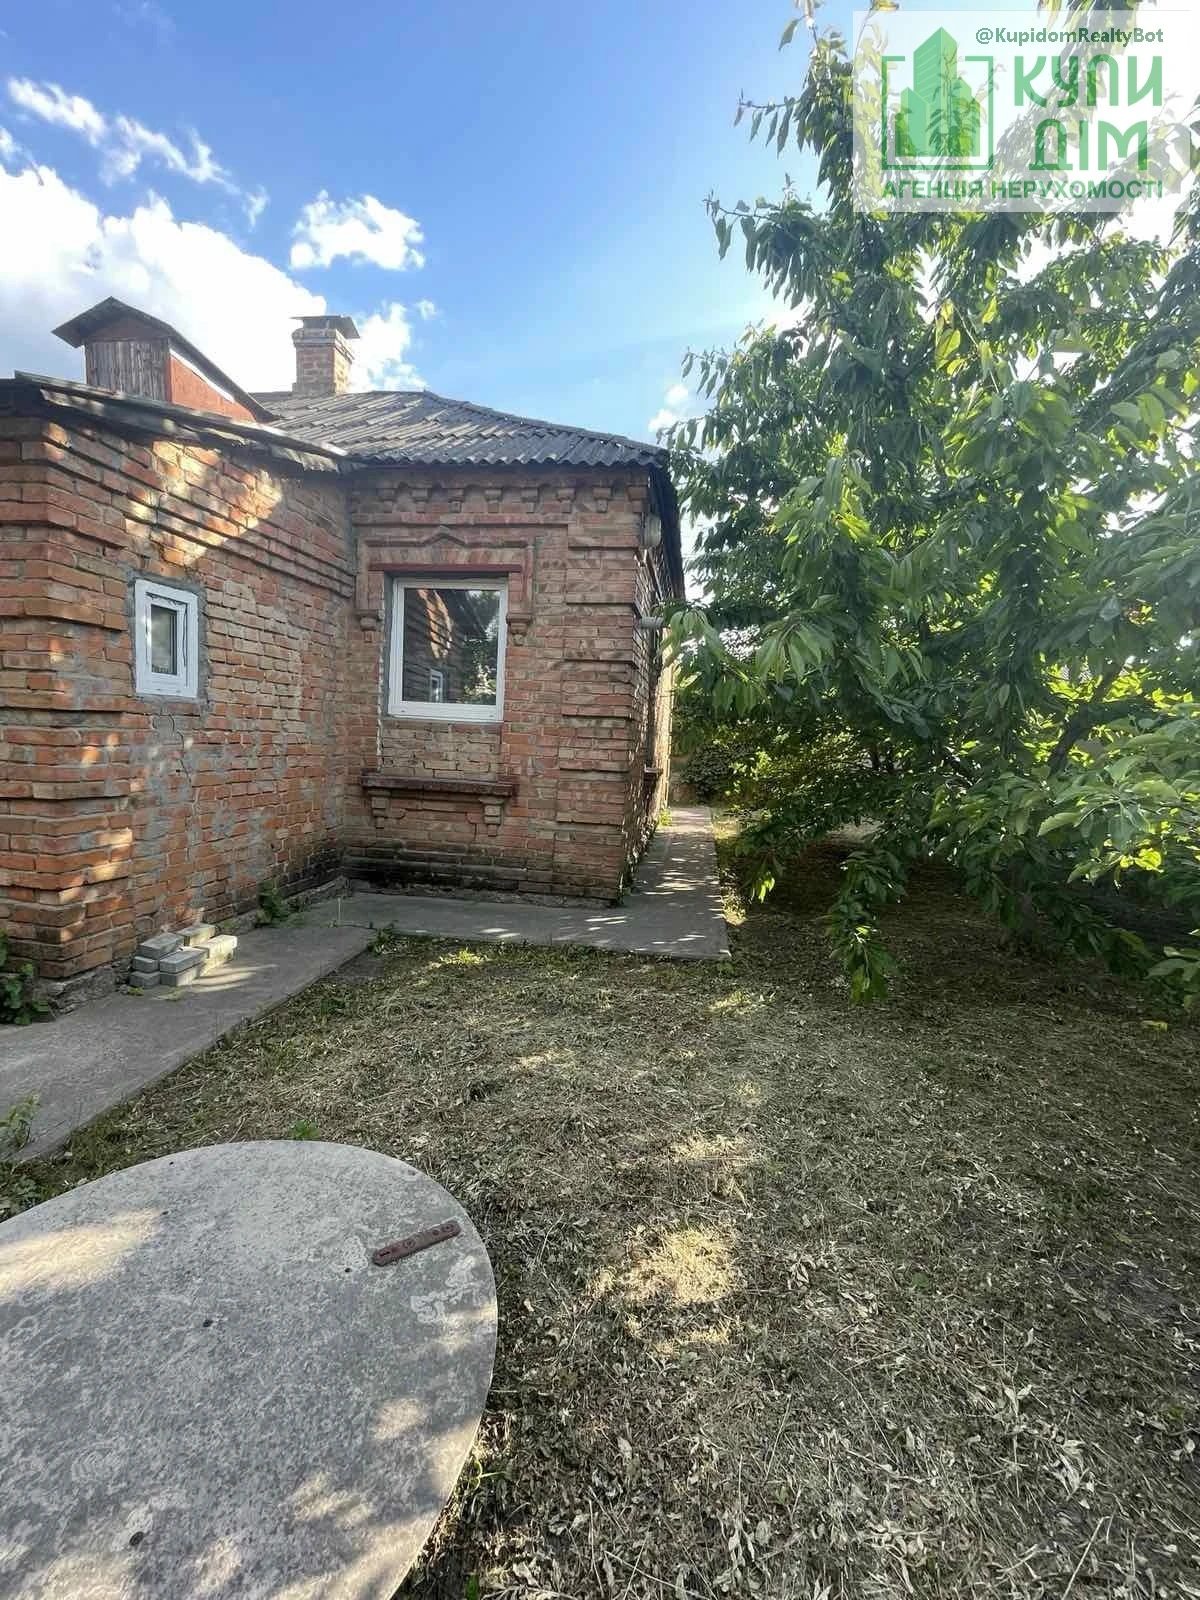 Продаж будинку. 60 m², 1 floor. Фортечний (кіровський), Кропивницький. 